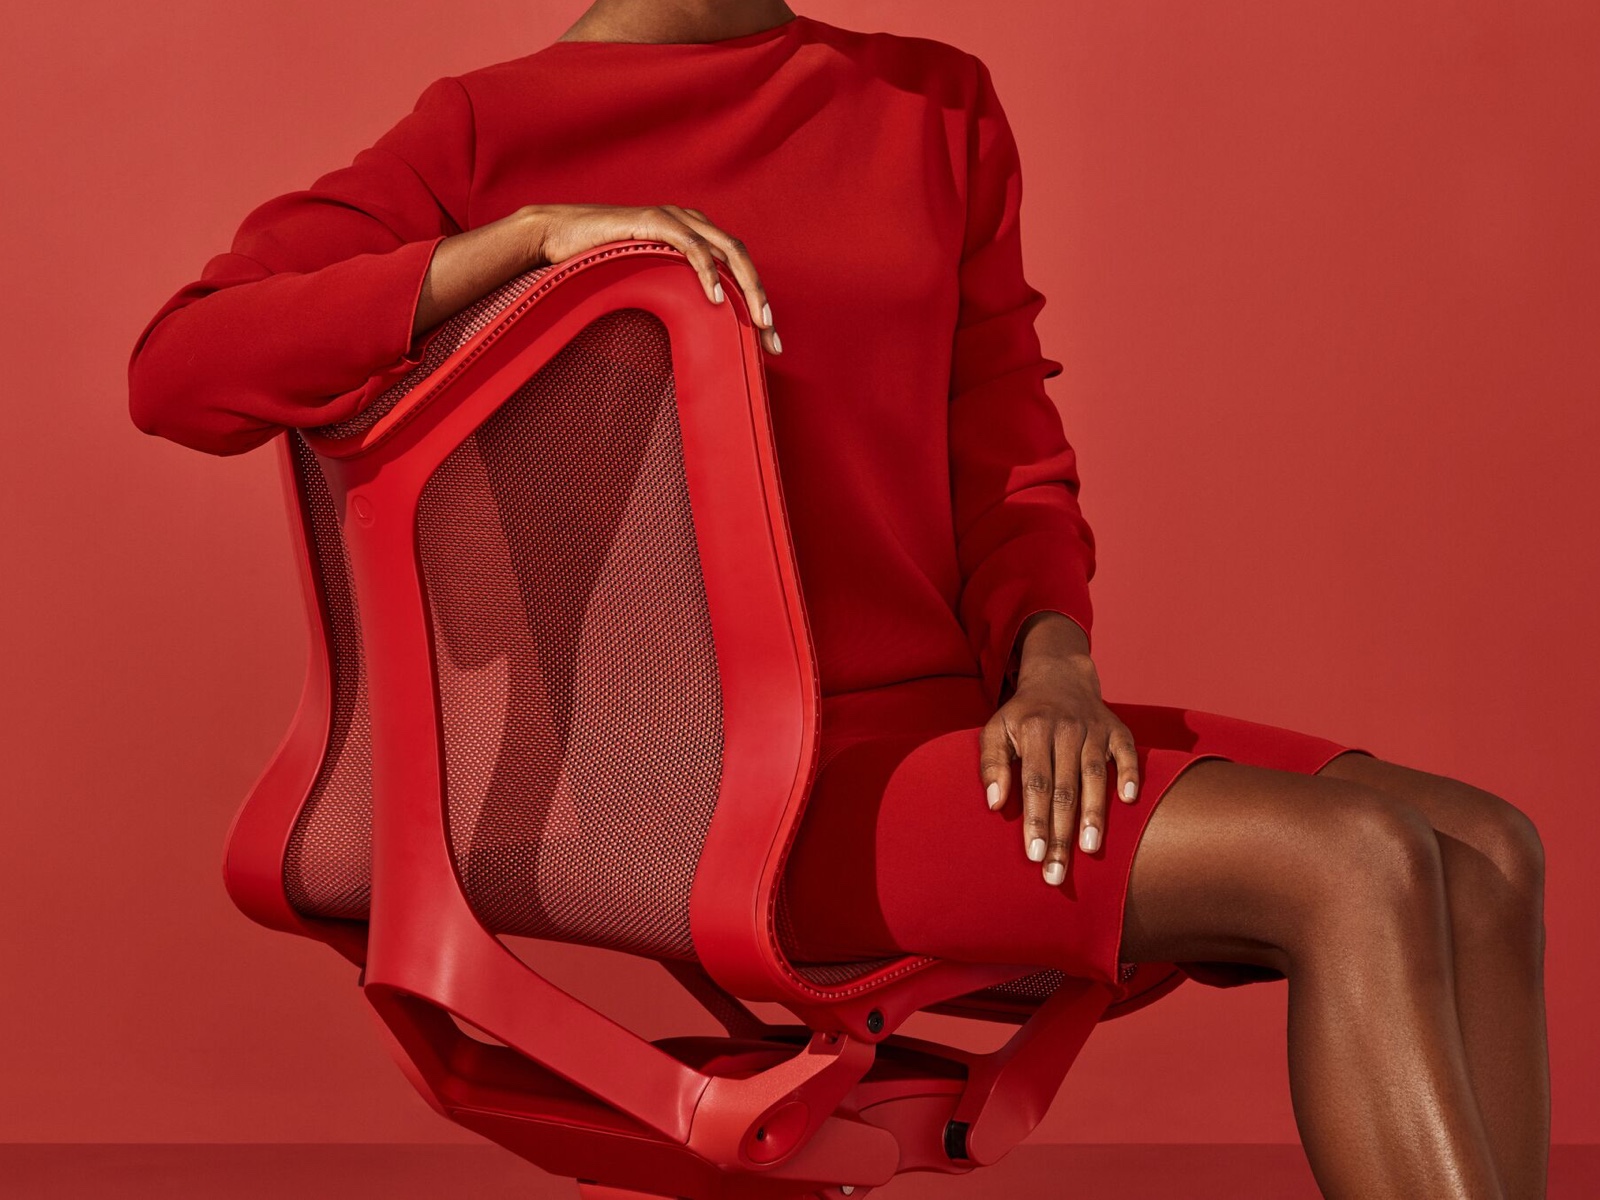 Una mujer con un vestido rojo se sienta en una silla Cosm con respaldo bajo en color rojo Canyon.